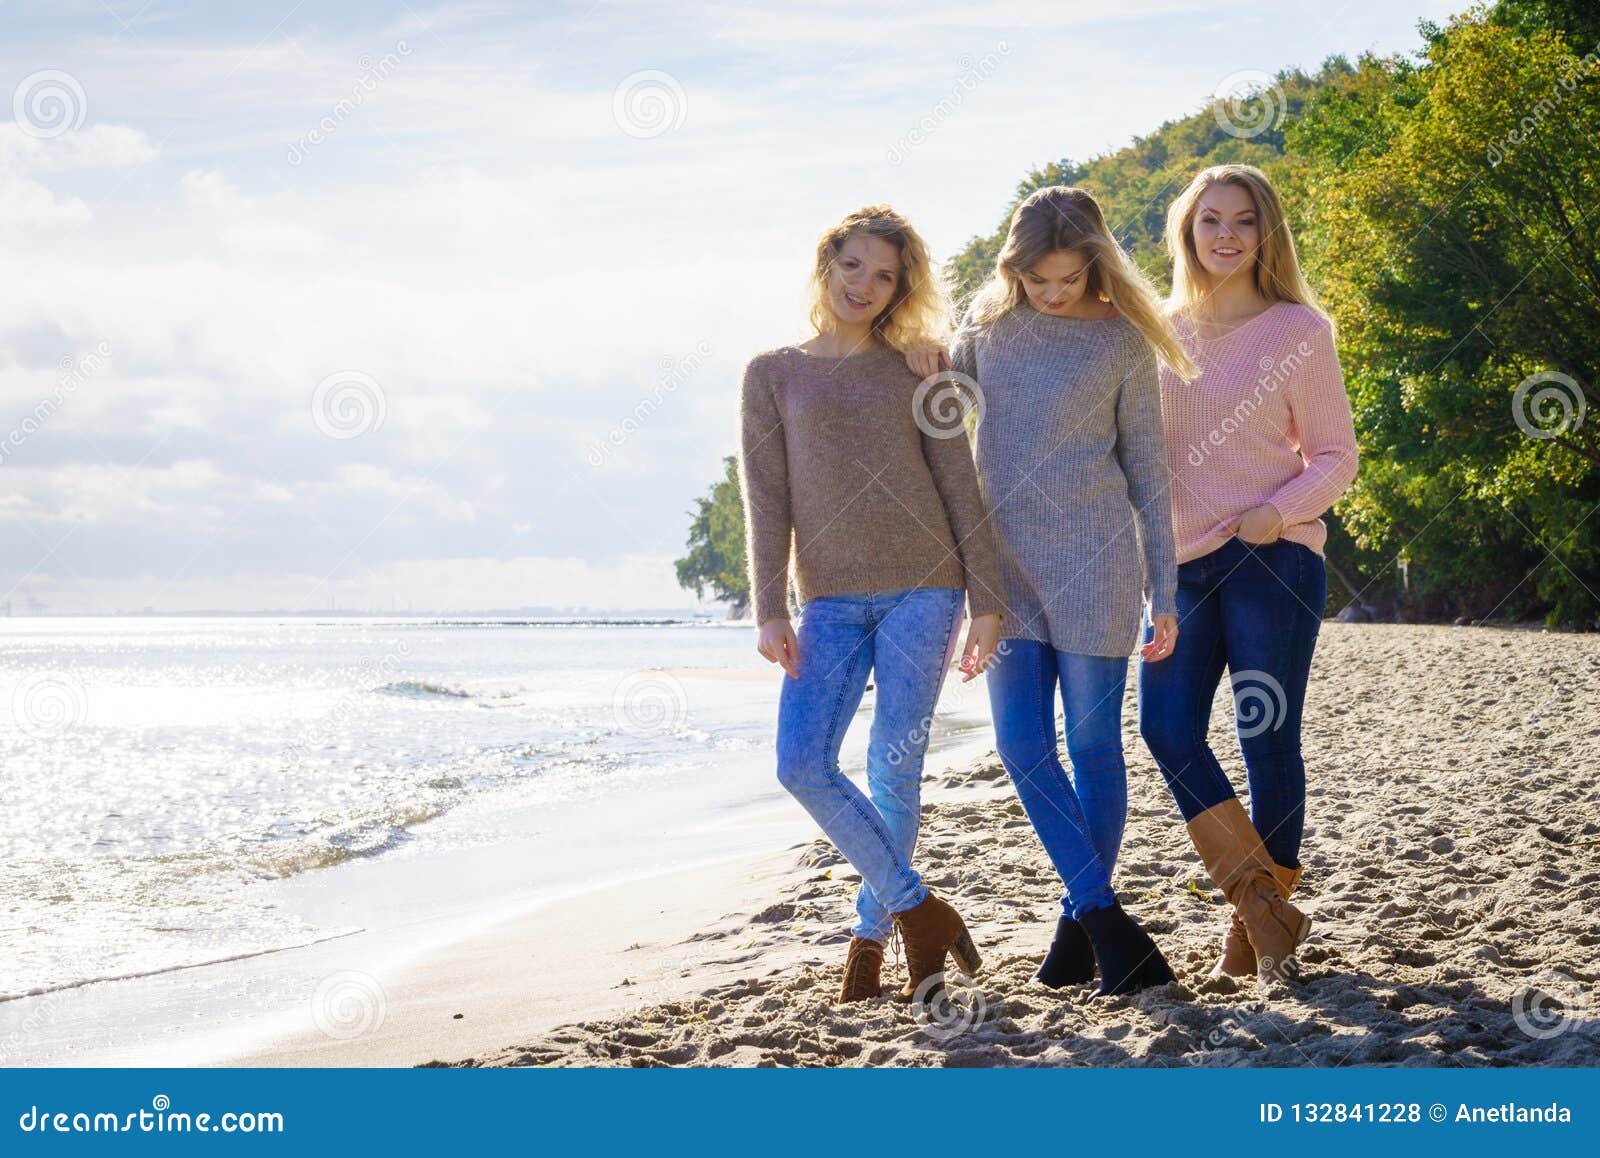 Three Fashionable Models Outdoor Stock Photo - Image of stylish, shore ...